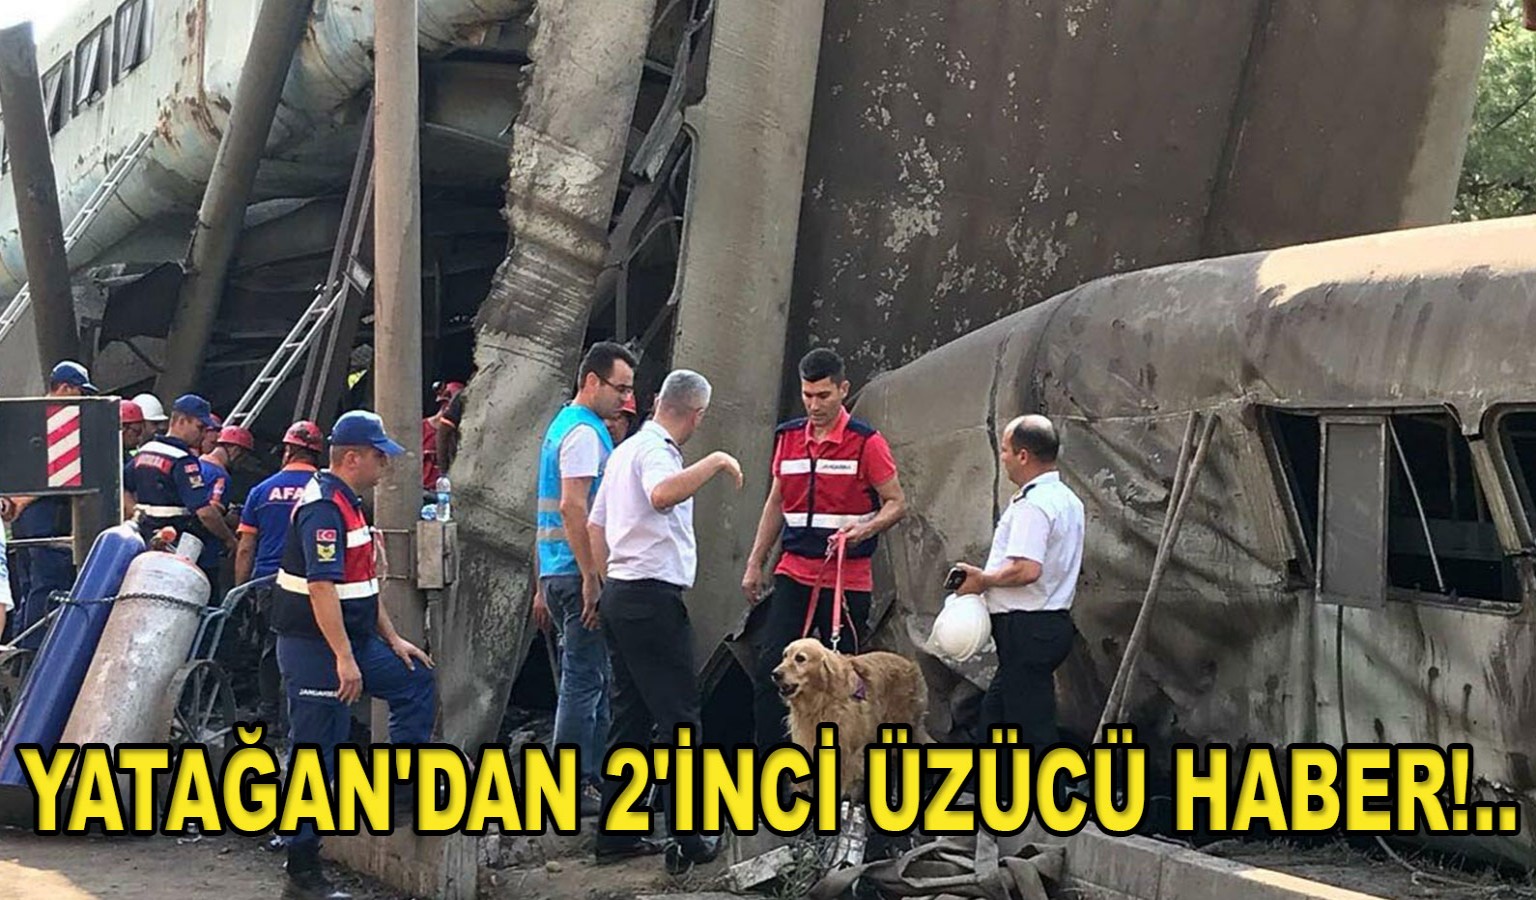 YATAĞAN'DAN 2'İNCİ ÜZÜCÜ HABER!..